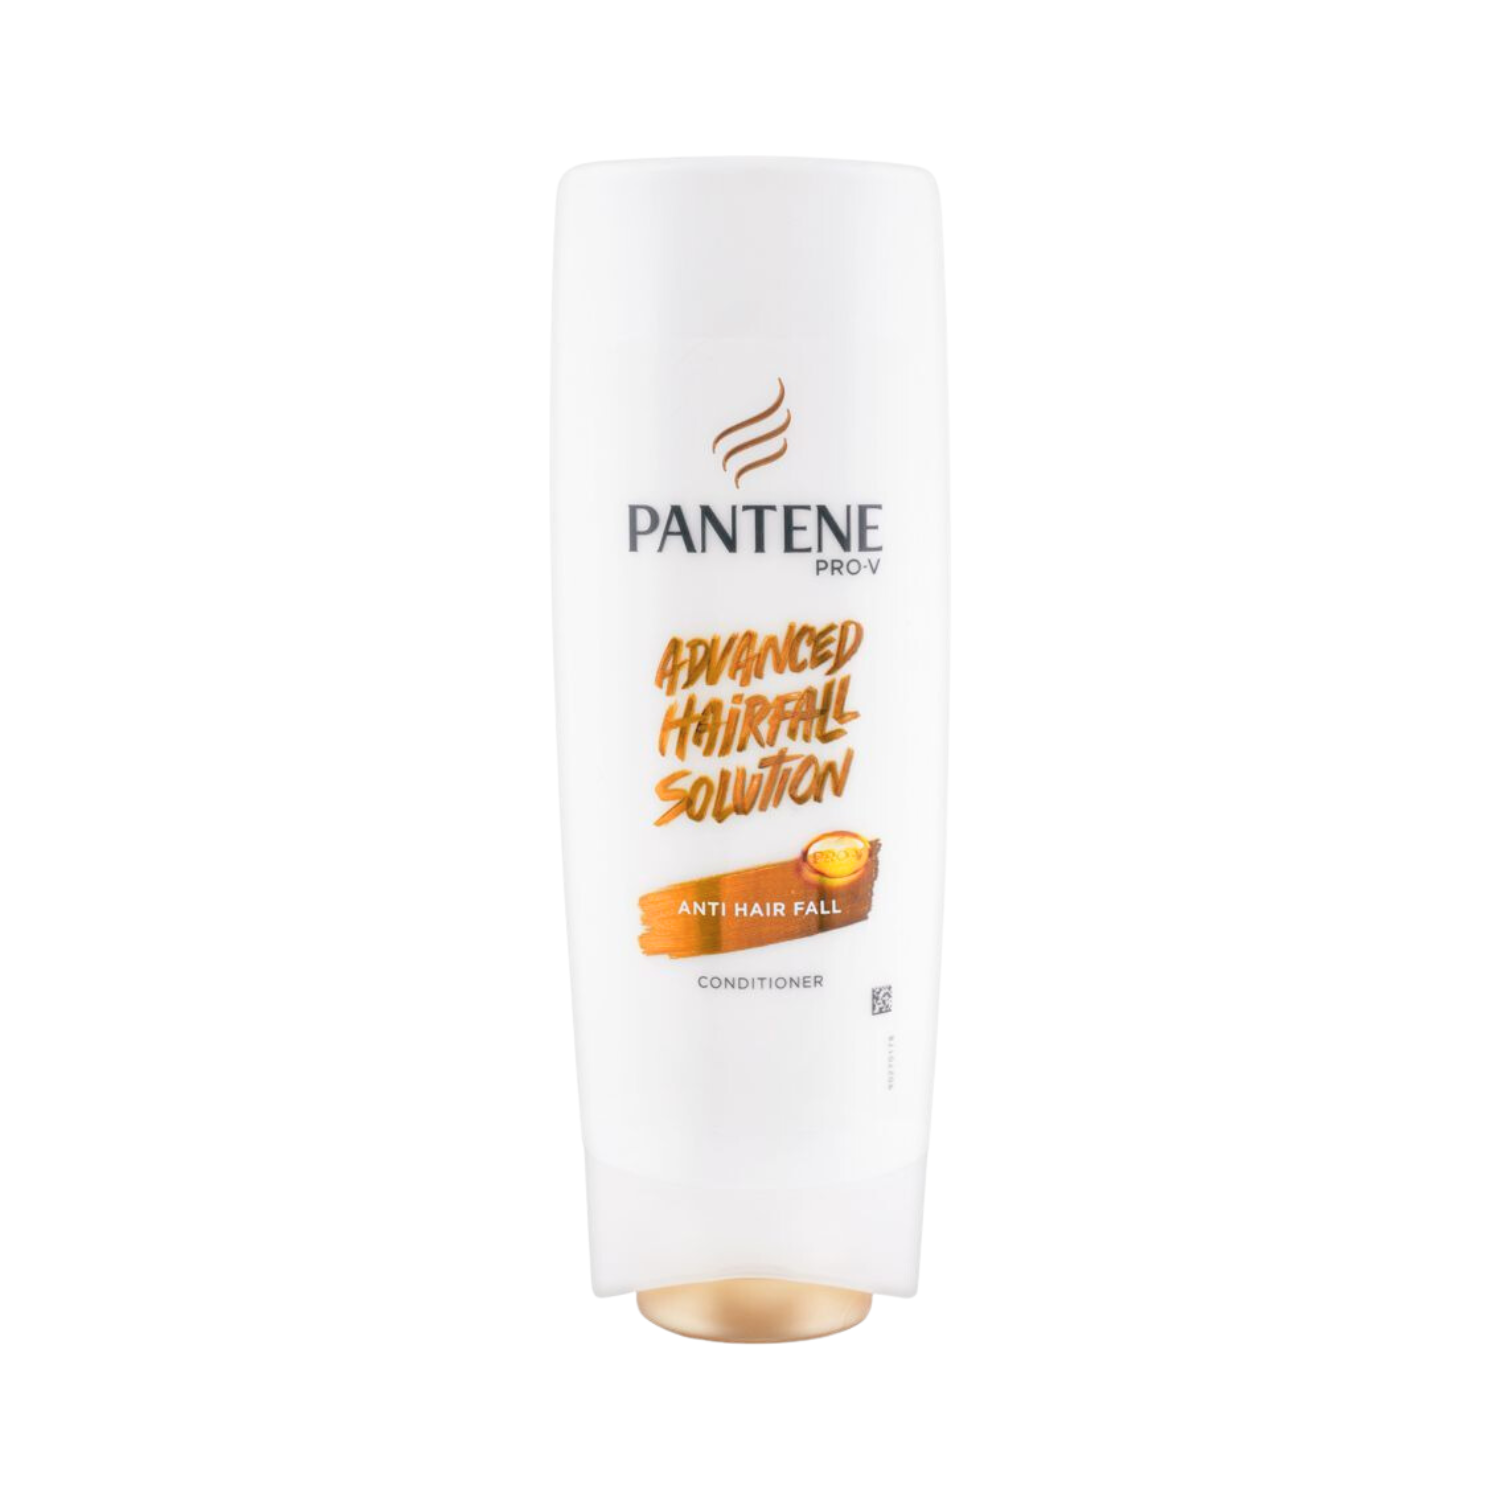 pantene-advanced-hair-fall-solution-anti-hair-fall-conditioner-180ml